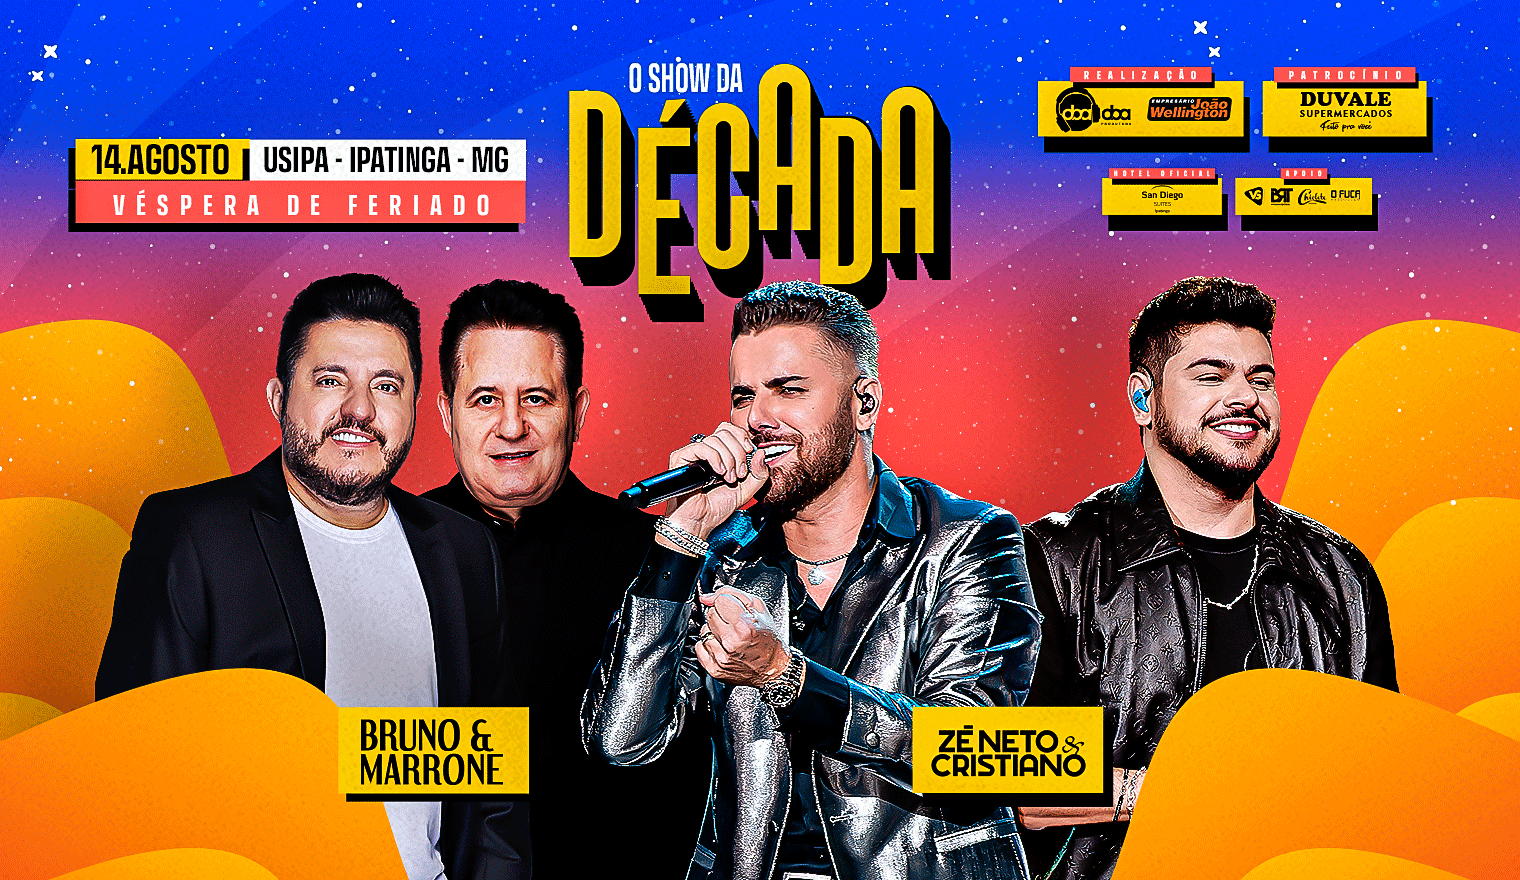 O Show da Década - Bruno e Marrone  + Zé Neto e Cristiano em Ipatinga